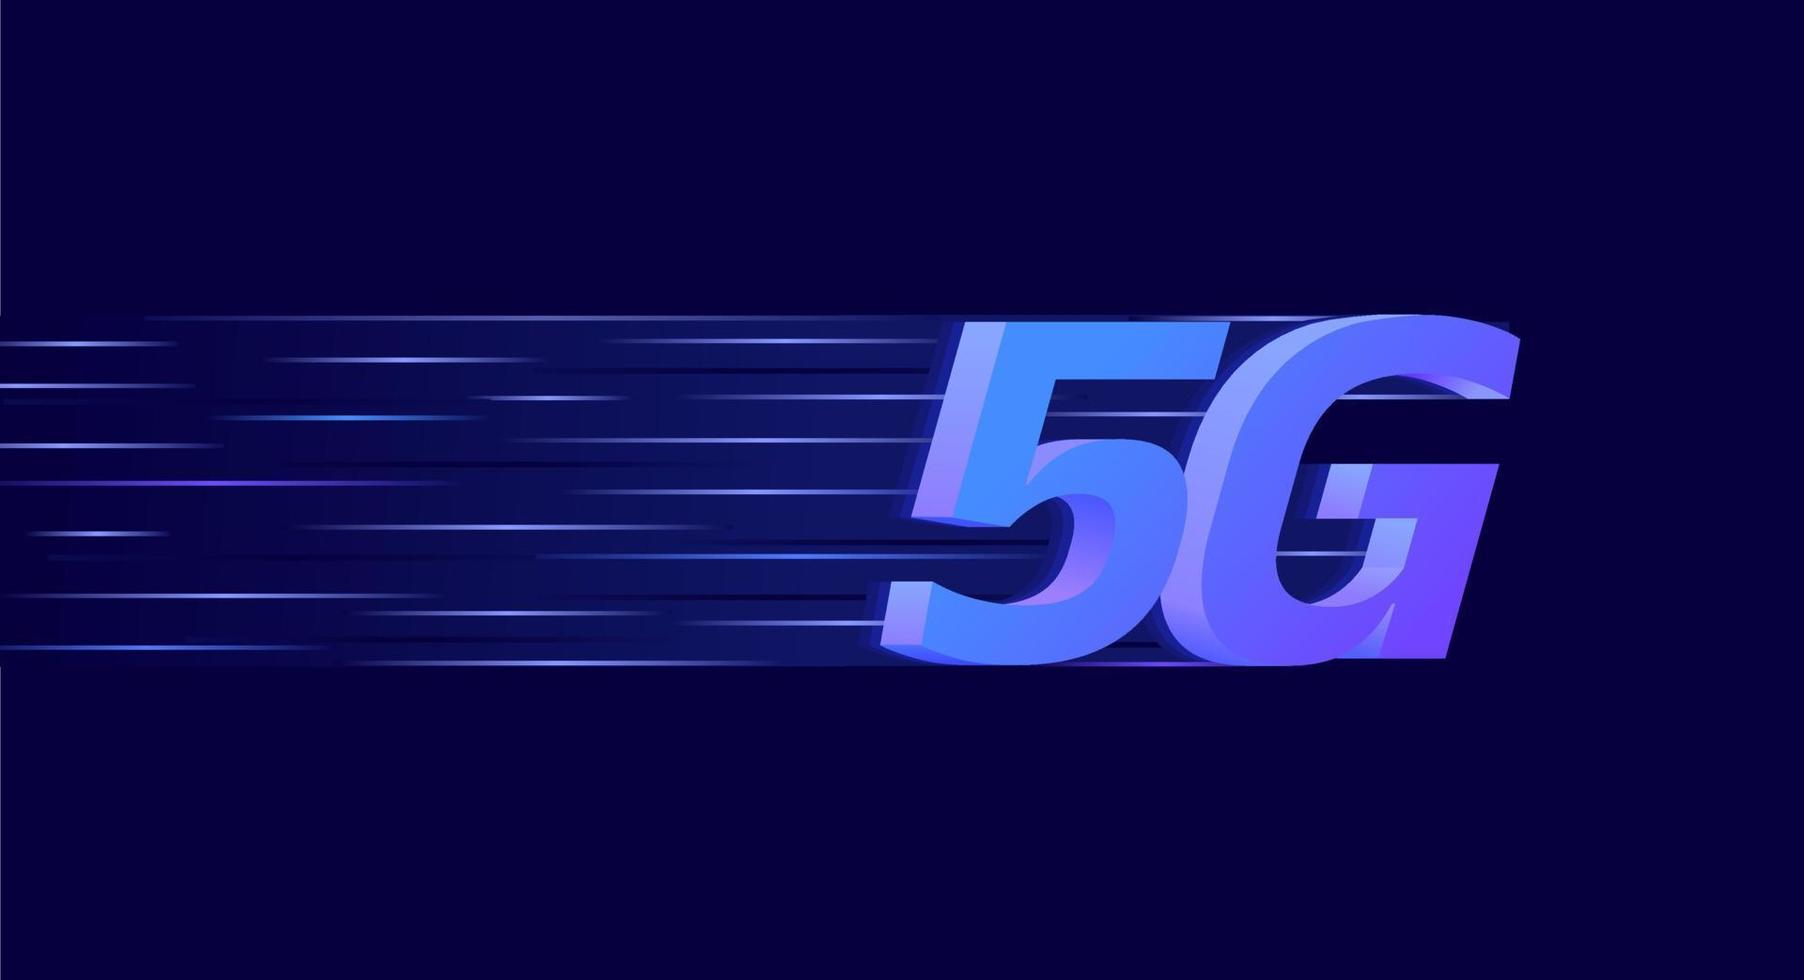 5g technologie internet fond fond d'écran vitesse de réseau rapide abstraite illustration vectorielle futuriste vecteur